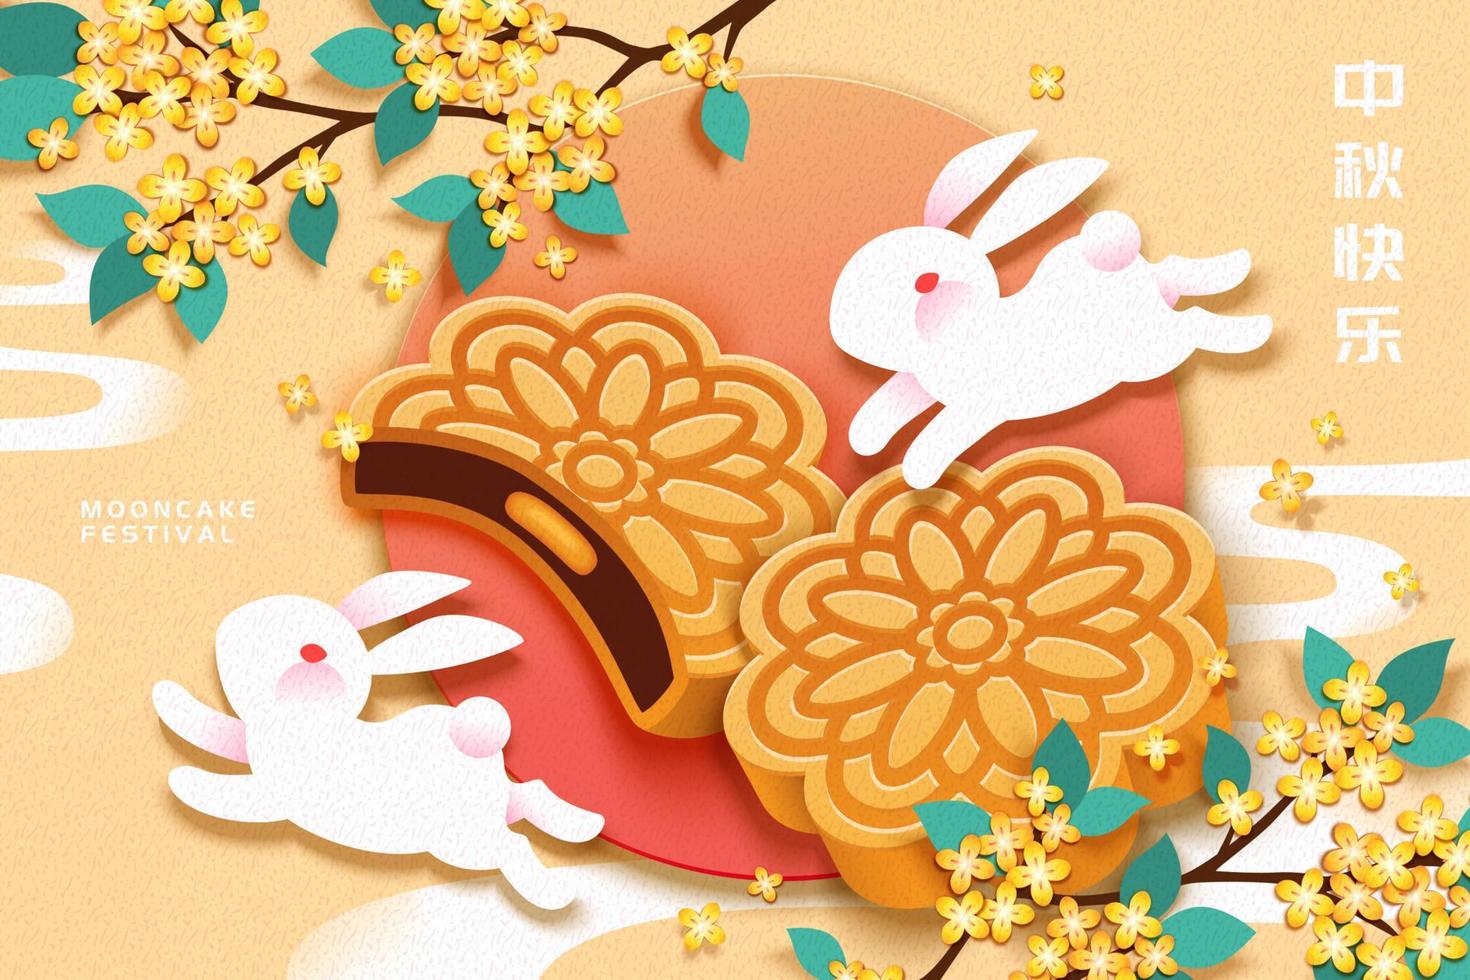 festival de pasteles de luna con conejo blanco y deliciosos pasteles de fondo amarillo claro, vacaciones de mediados de otoño escritas en chino vector